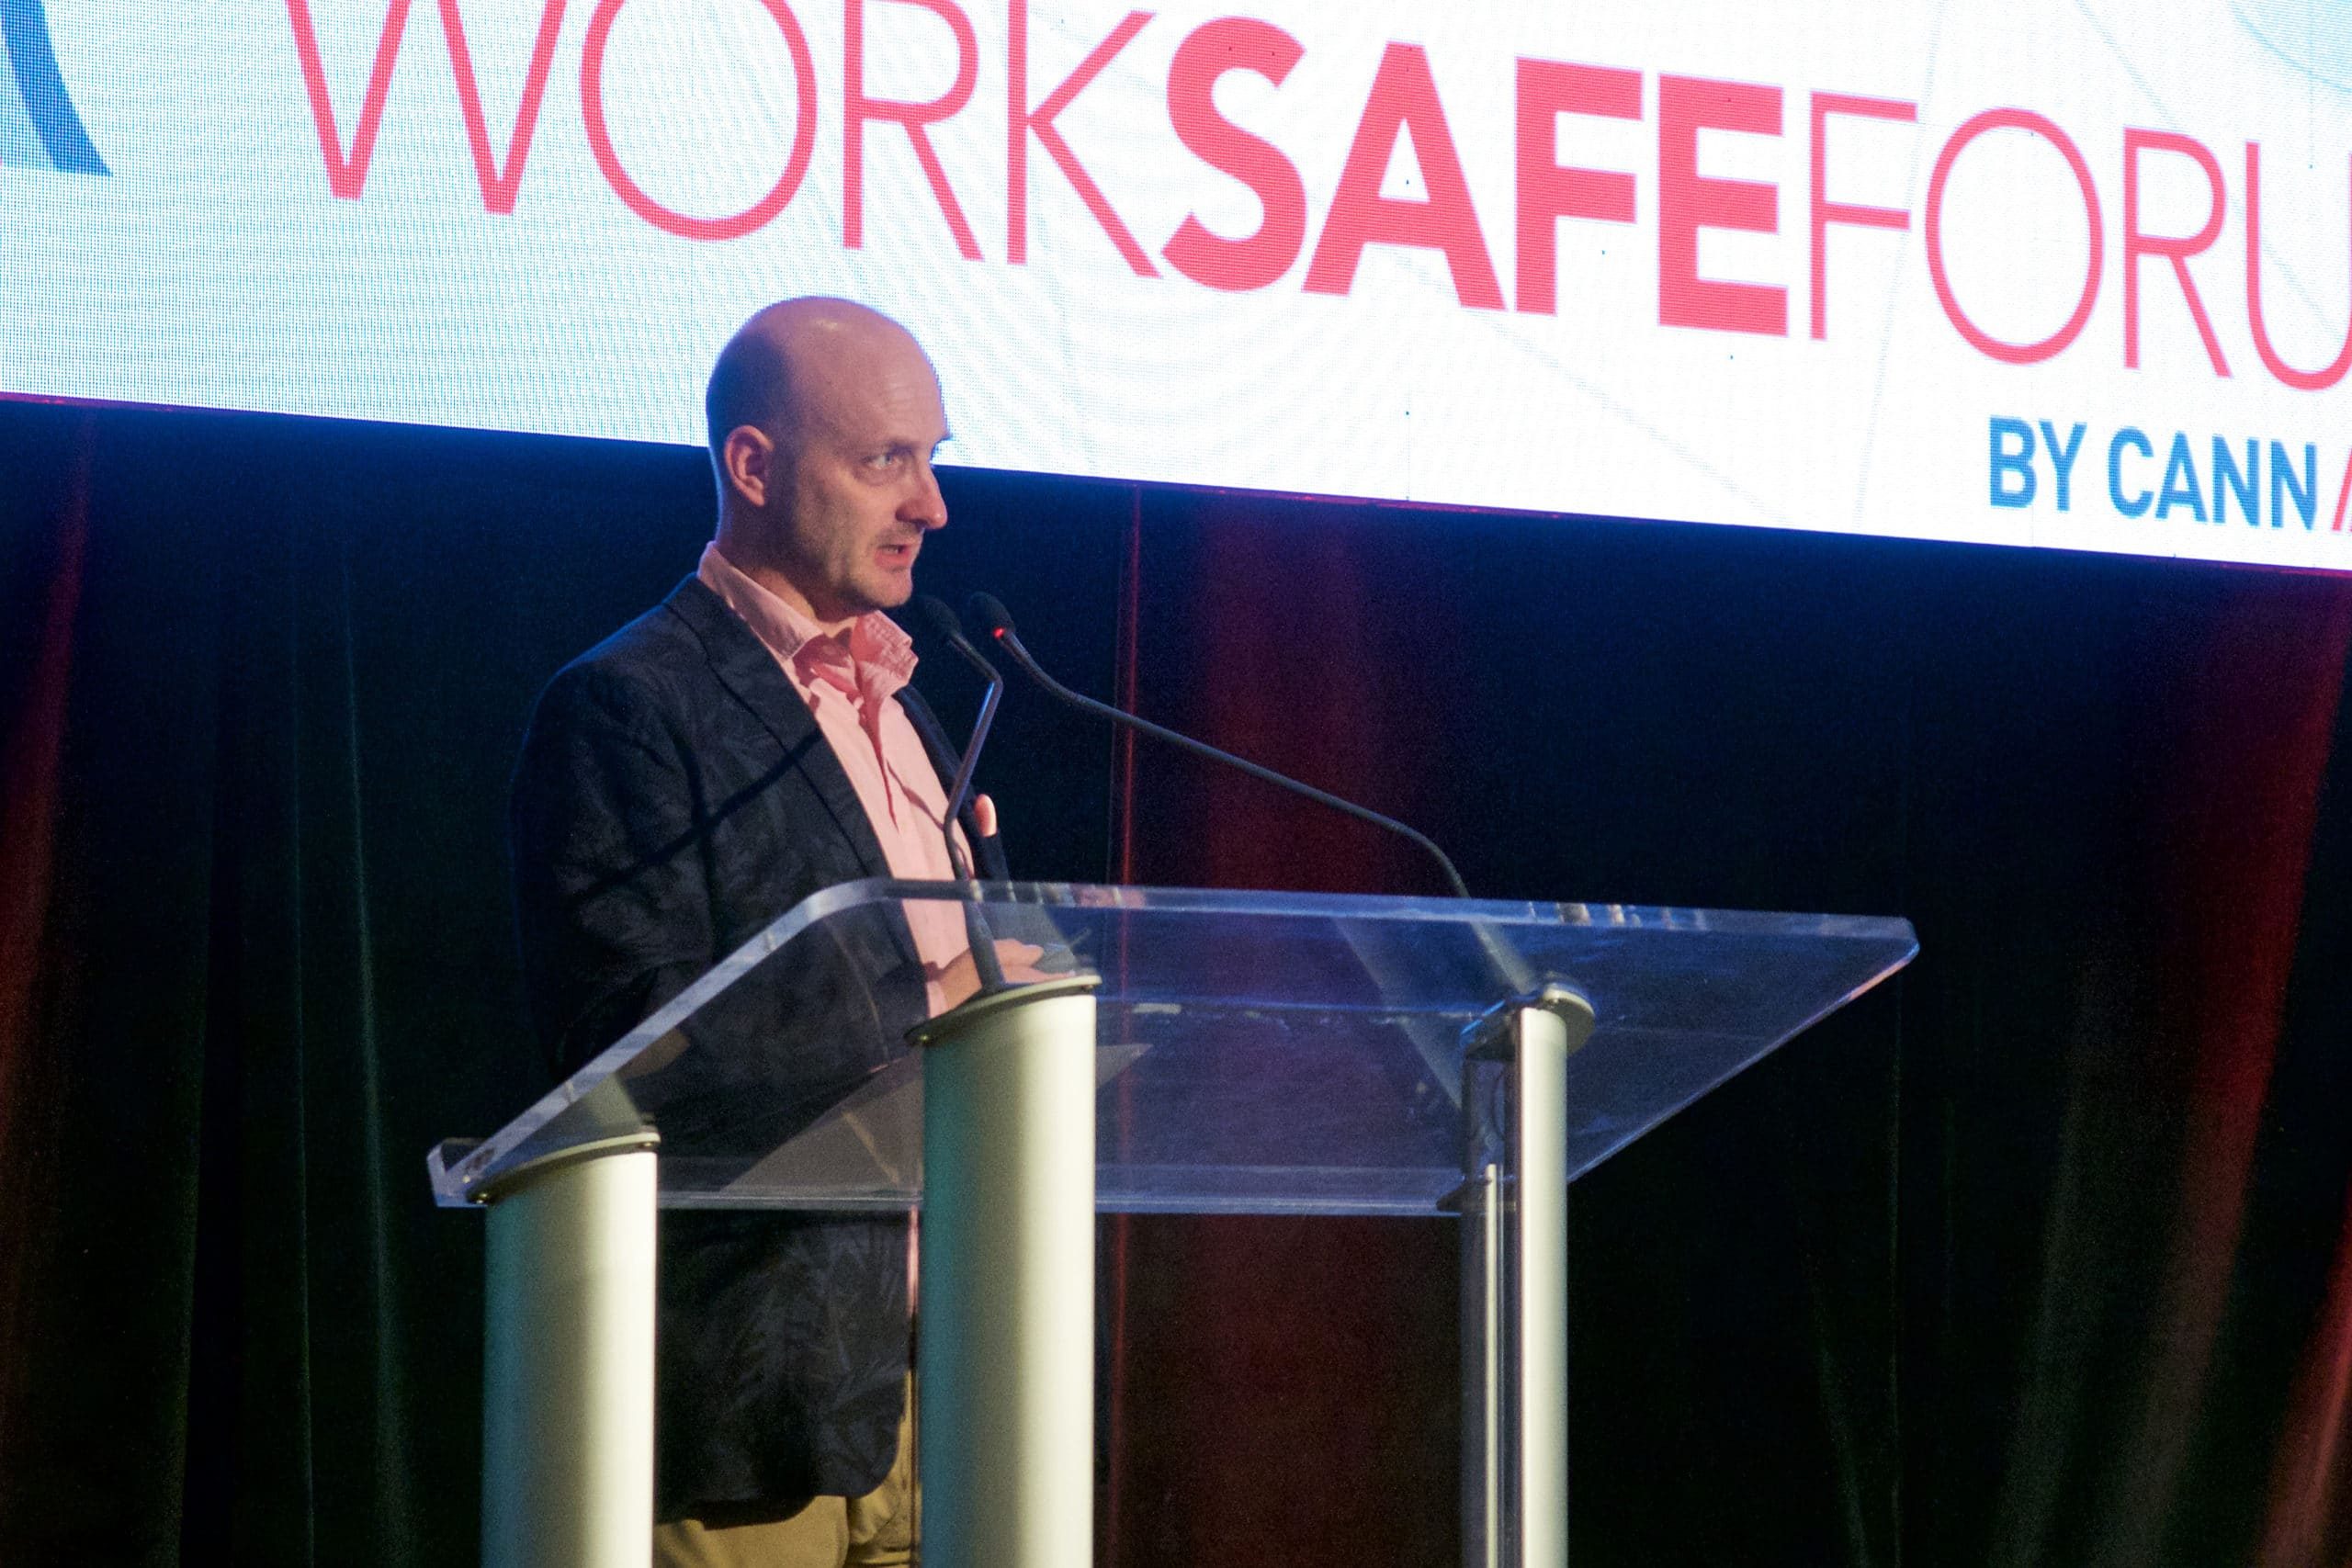 CannAmm WorkSafe Forum